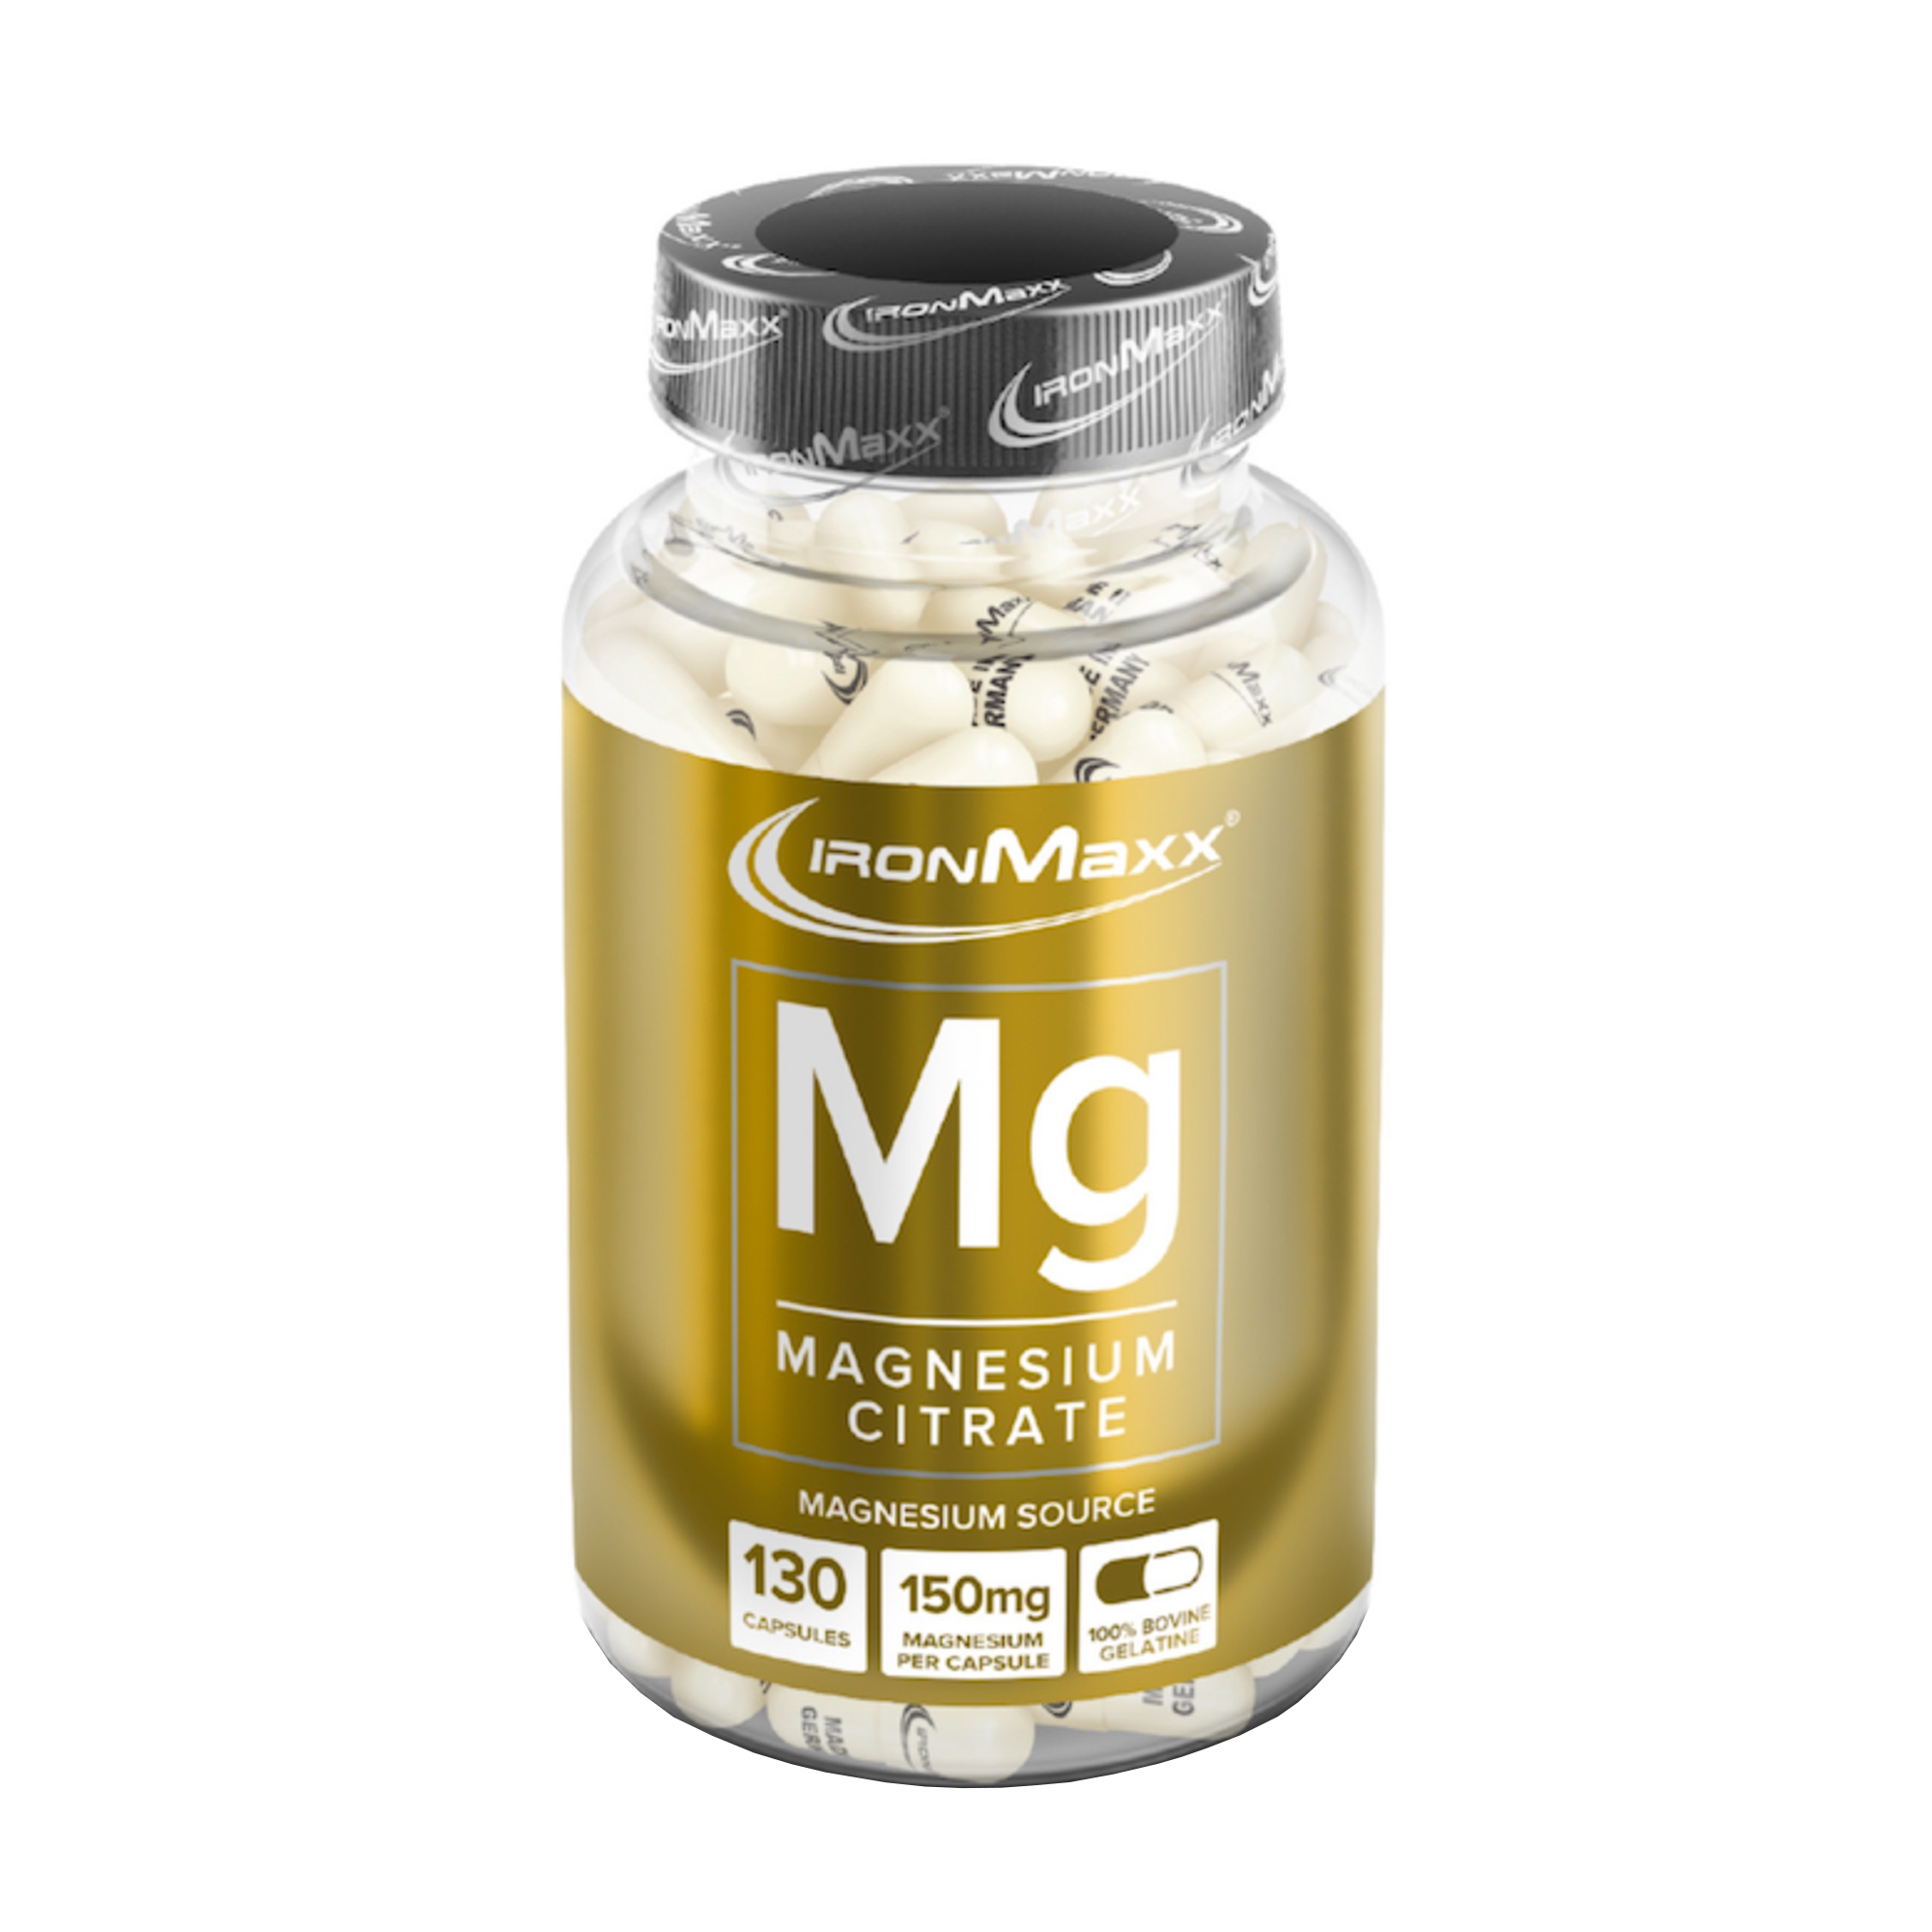 Ironmaxx Mg Magnesium 130 Kapseln